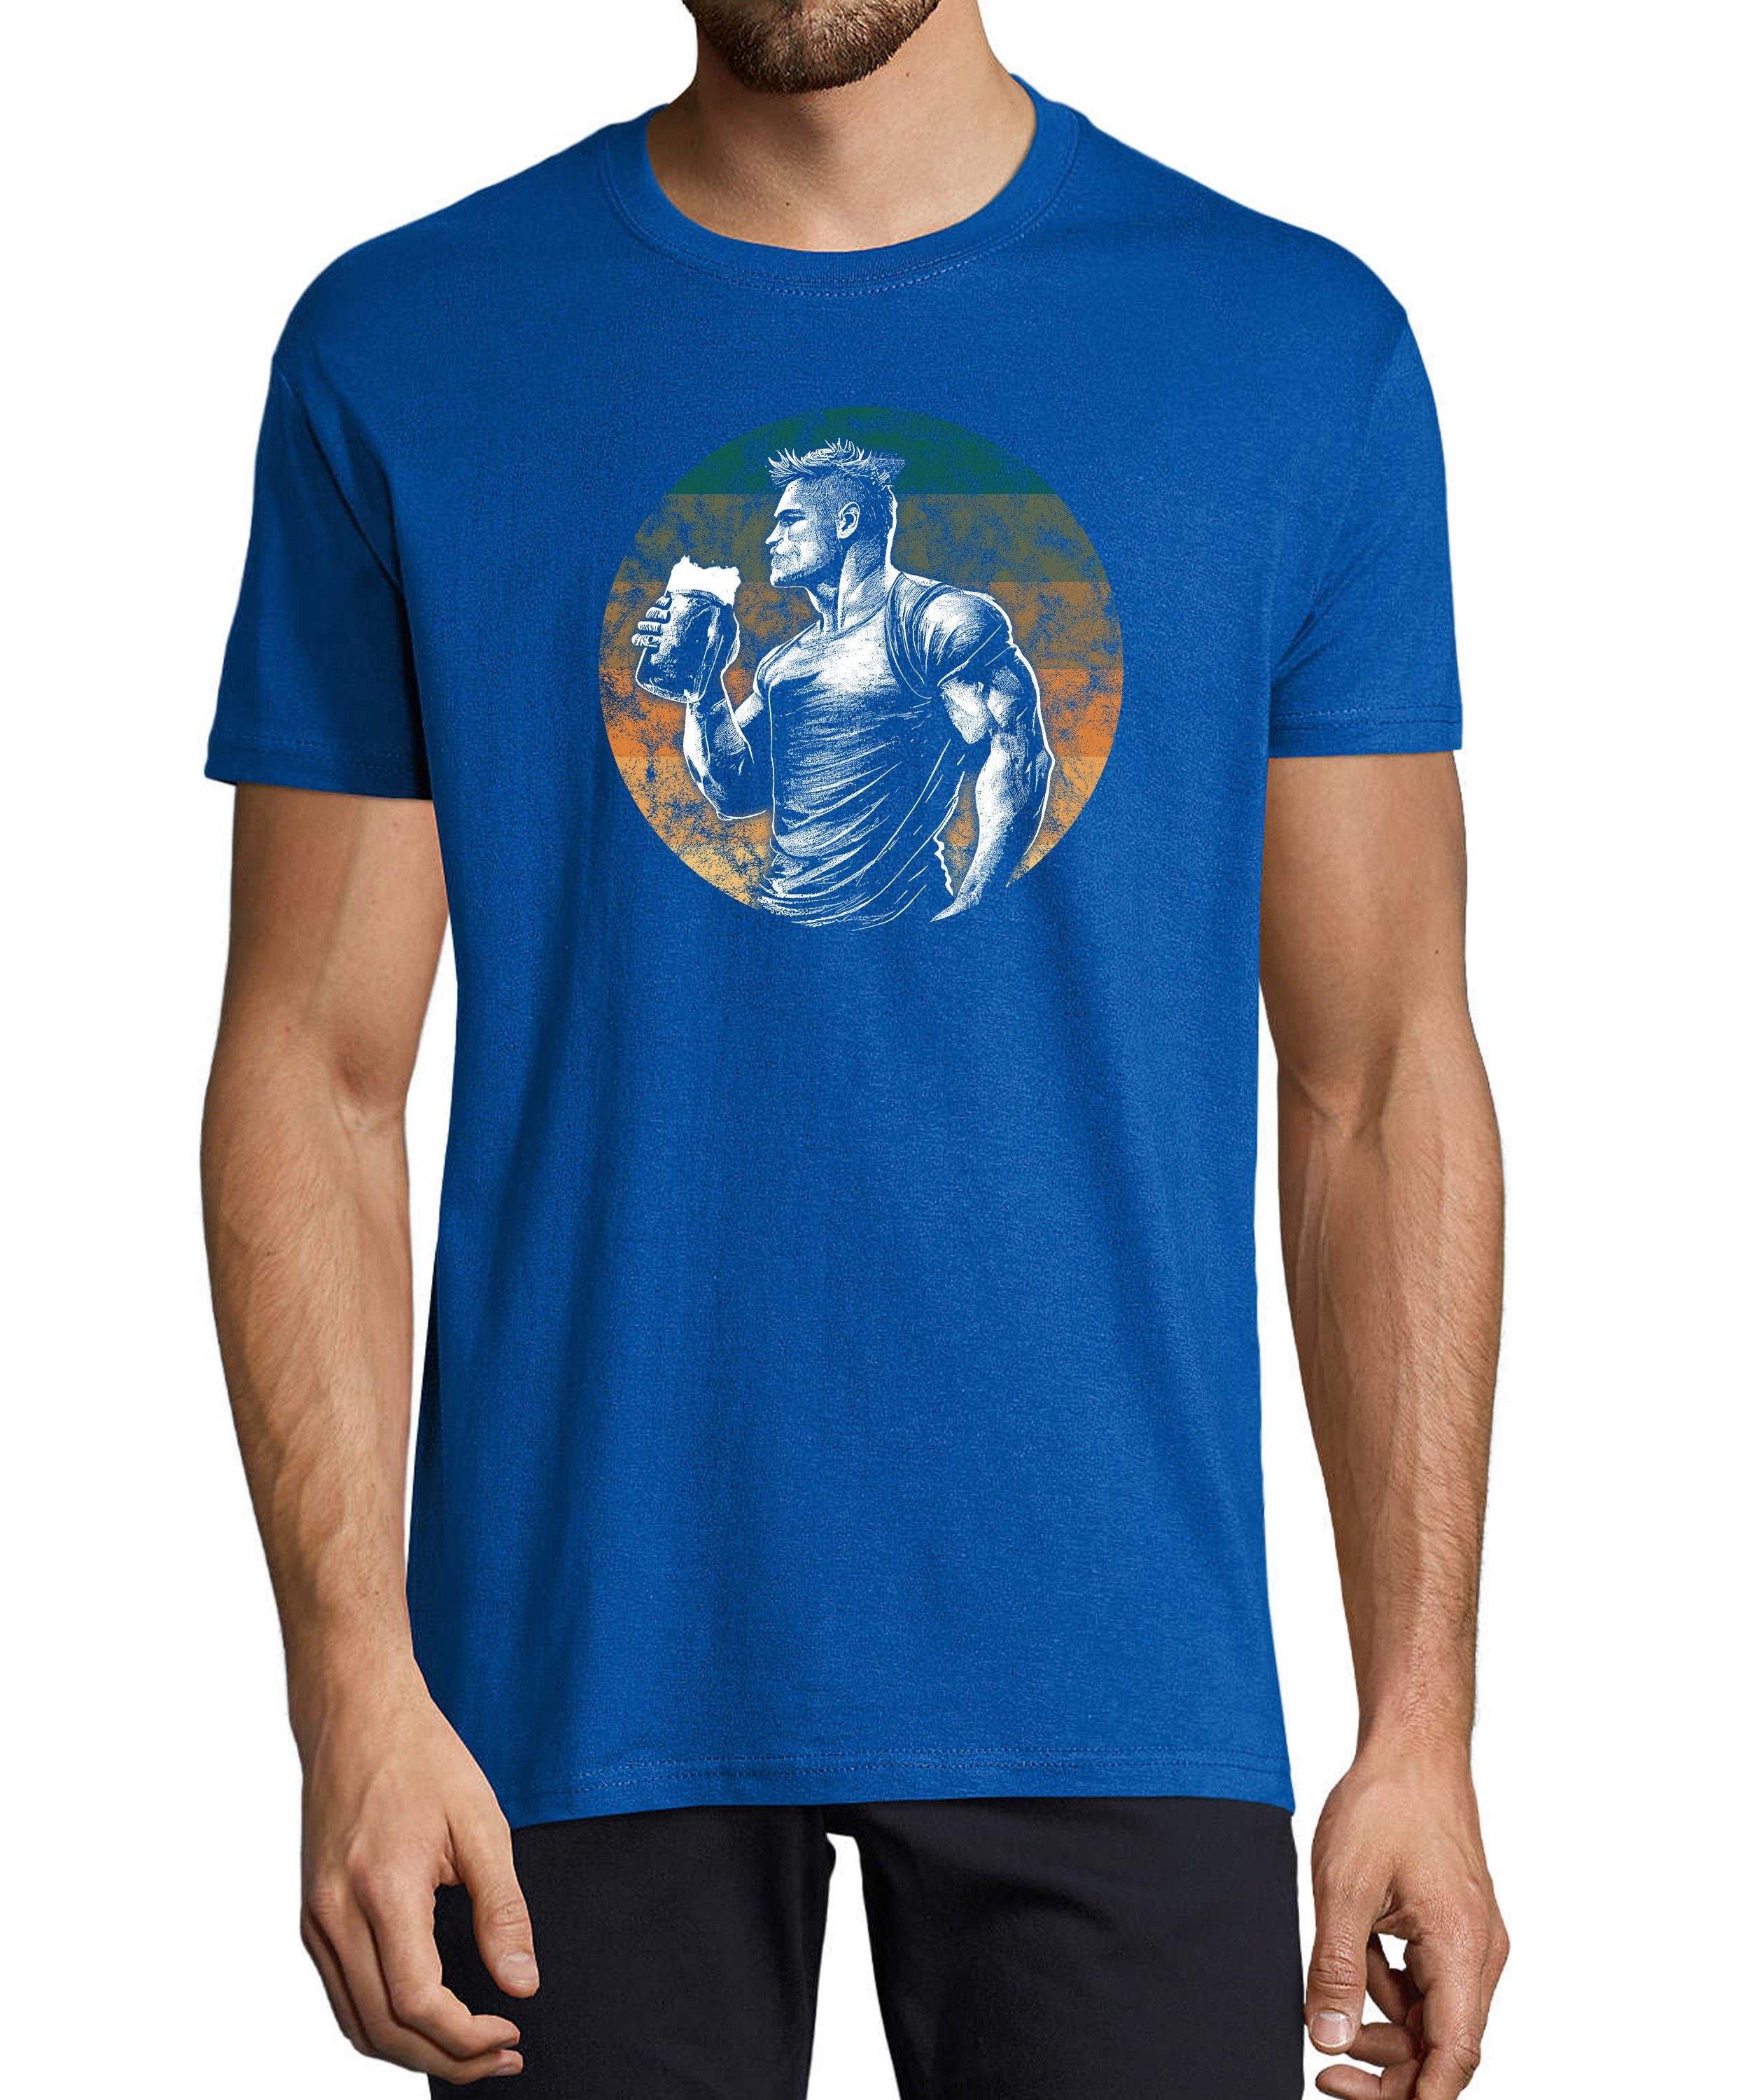 MyDesign24 T-Shirt Herren Print Shirt - Muskulöser Mann mit einem Mass Bier Baumwollshirt mit Aufdruck Regular Fit, i298 royal blau